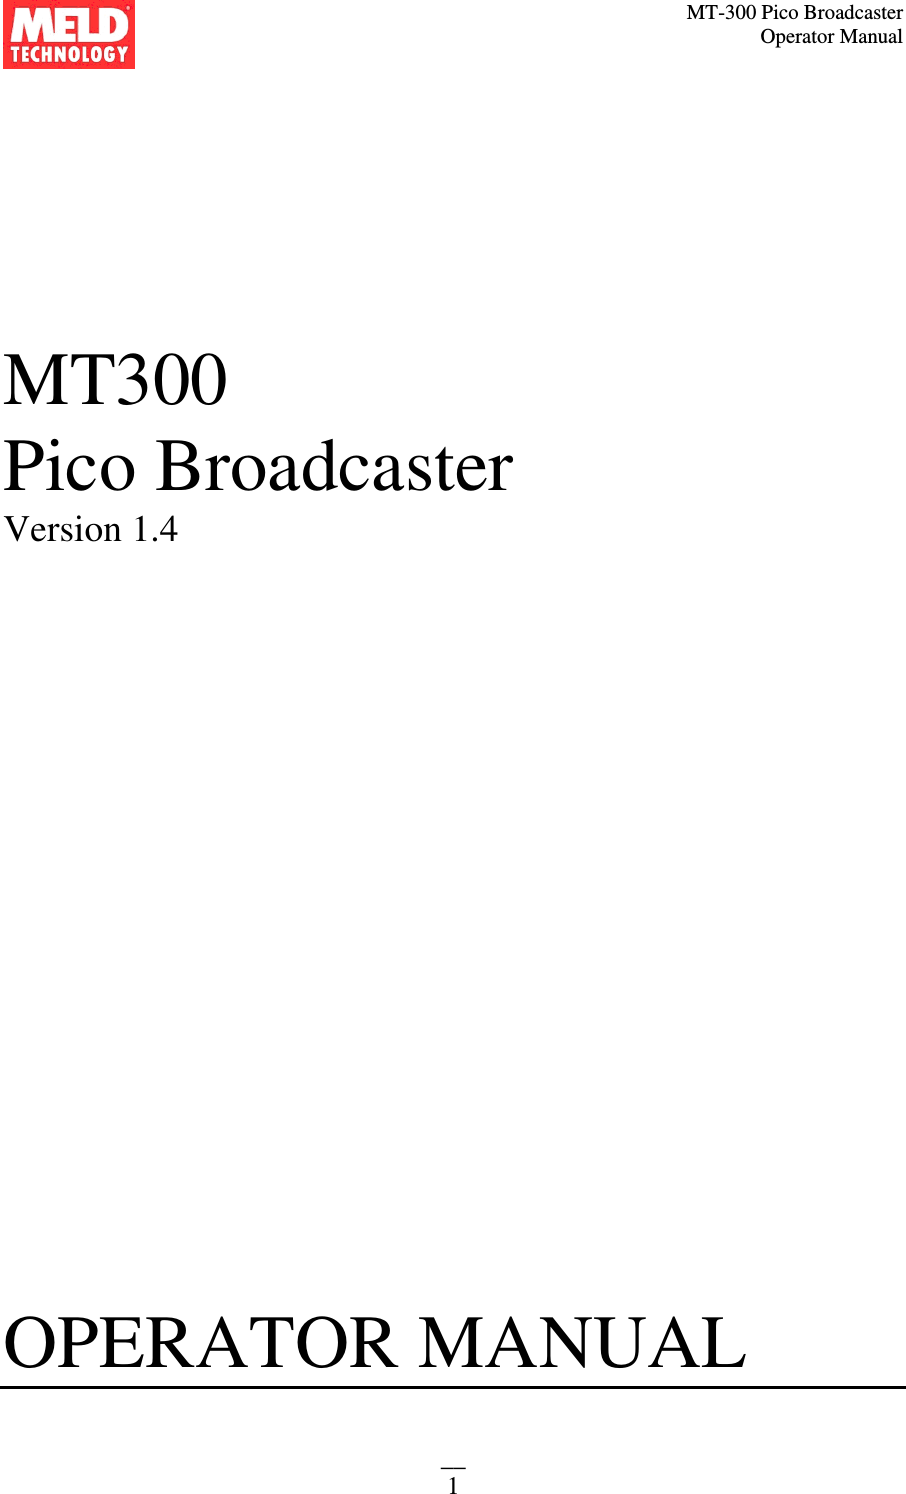 MT-300 Pico Broadcaster                                                                                                                                             Operator Manual __ 1    MT300 Pico Broadcaster  Version 1.4                         OPERATOR MANUAL    